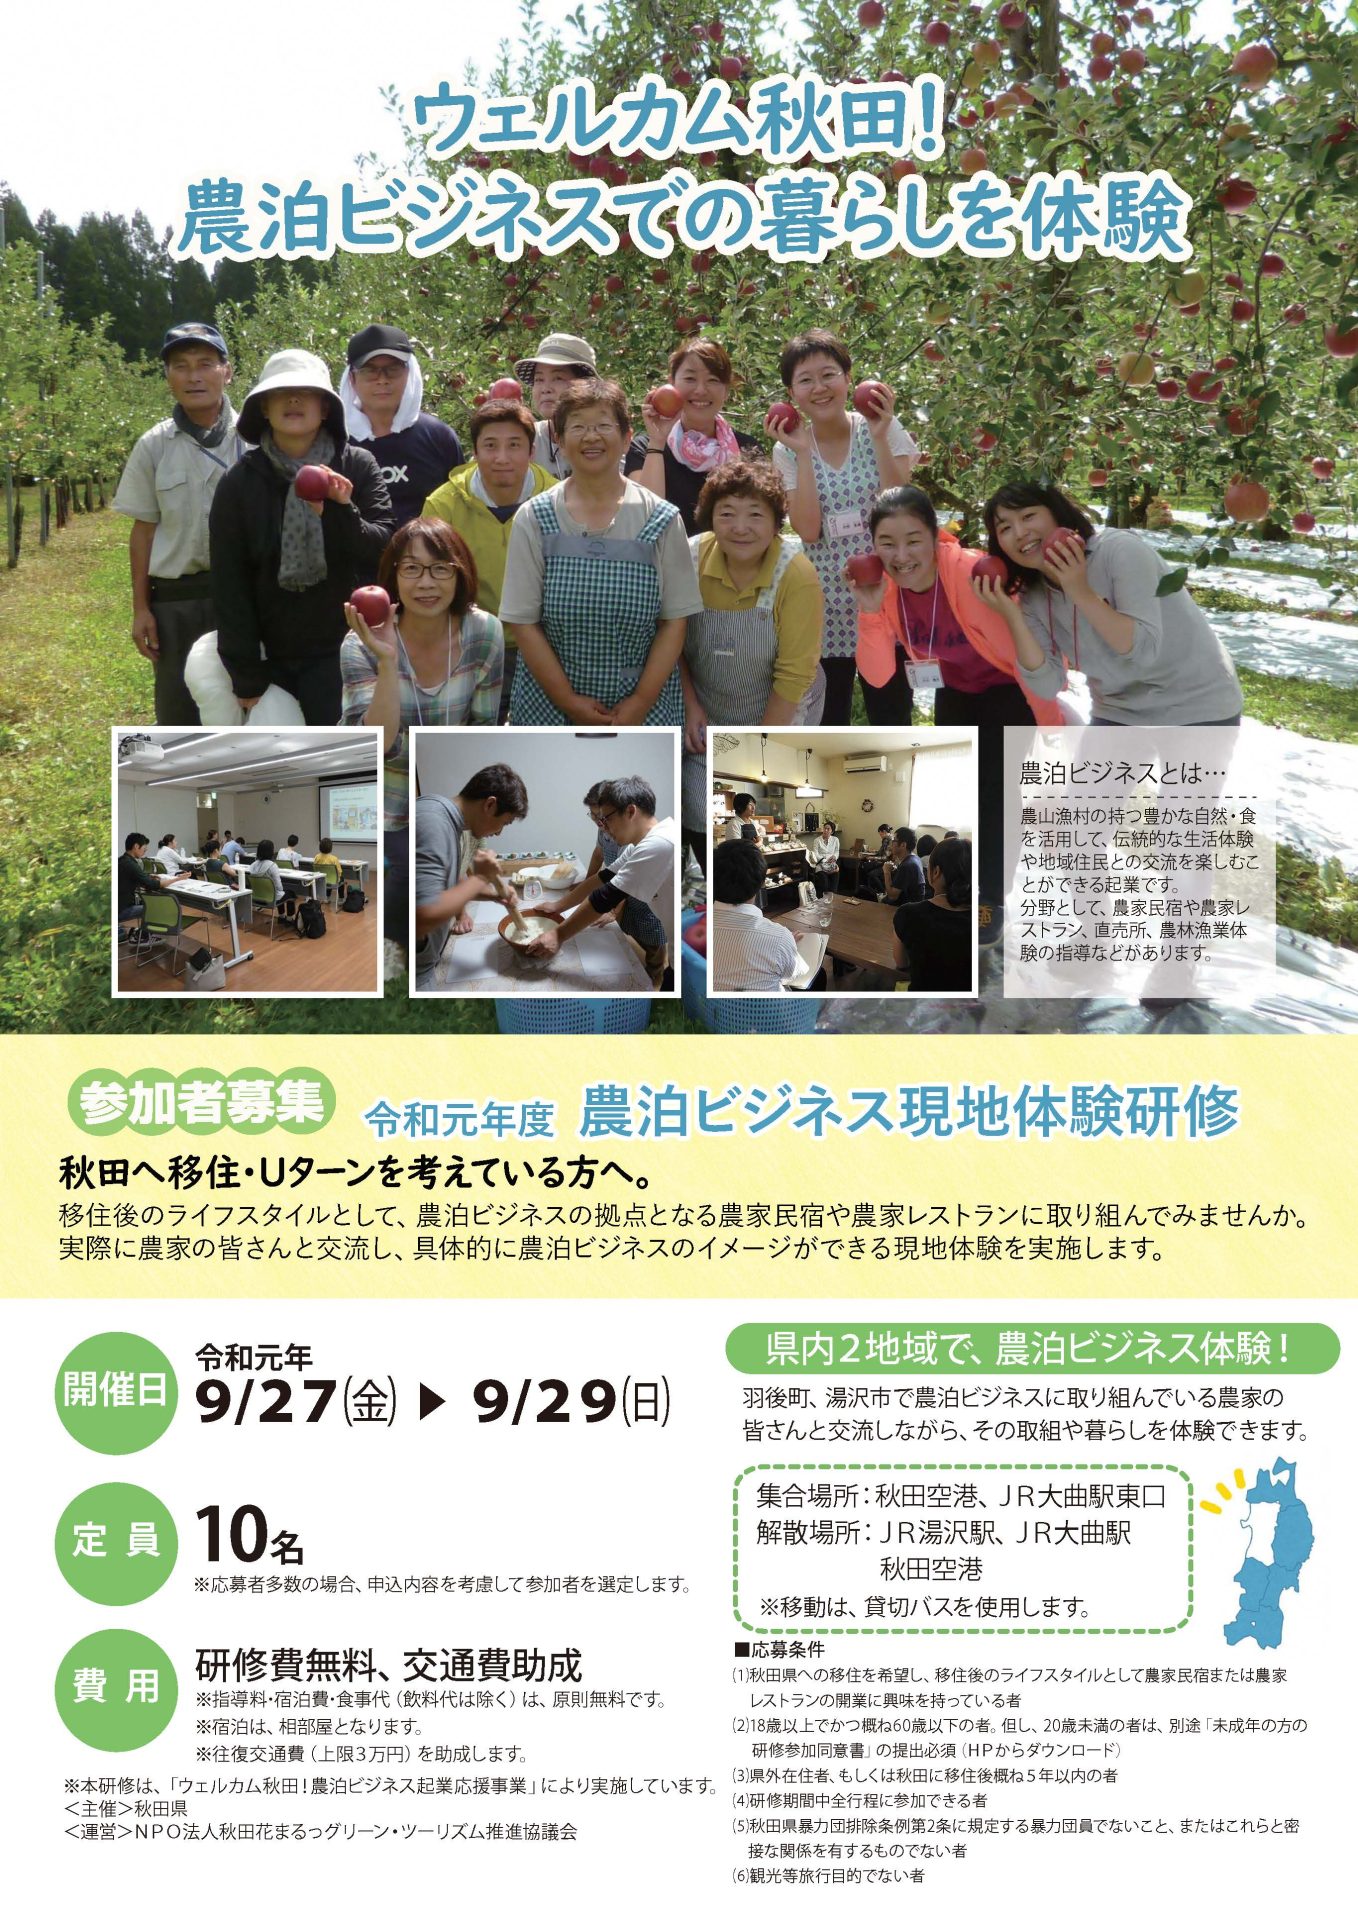 ウェルカム秋田！農泊ビジネスでの暮らしを体験 | 移住関連イベント情報